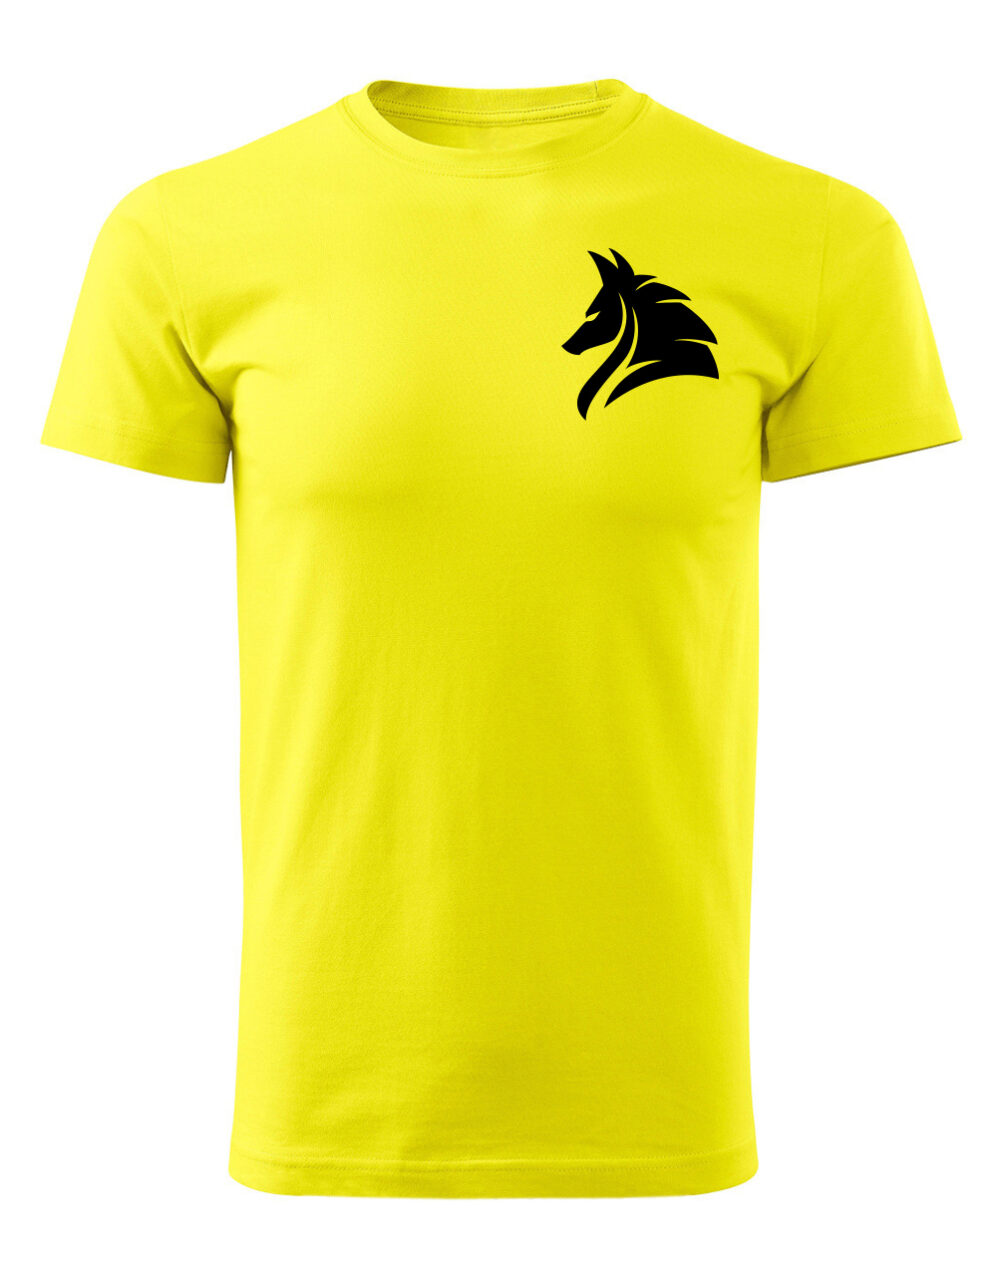 Pánské tričko s potiskem Vlk žlutá